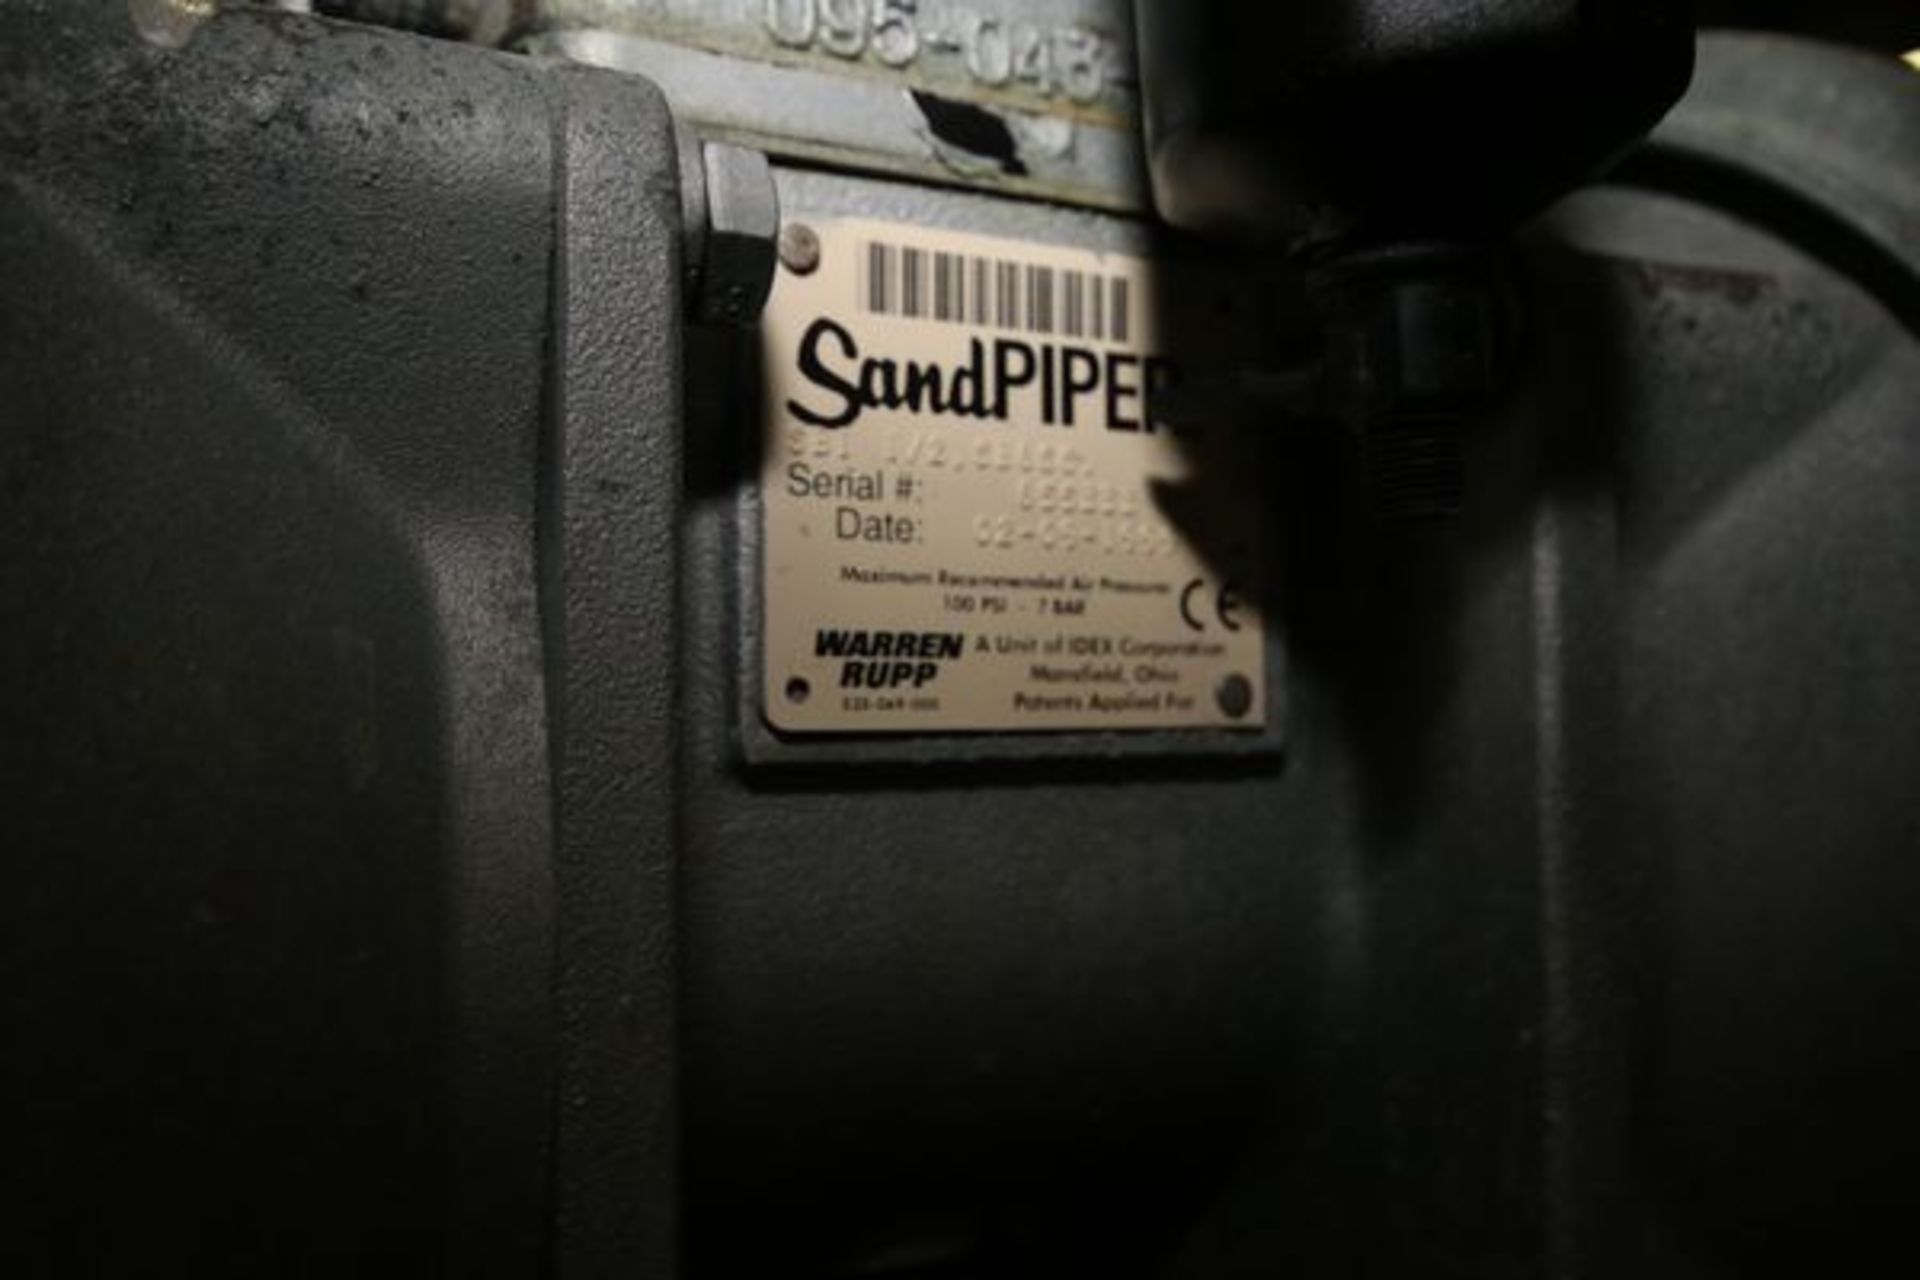 Sandpiper Diaphram Pump, S/N 655333, Max. Air Press. 100 PSI-7 Bar, 1 1/2" Clamp Type Inlet/ - Image 3 of 3